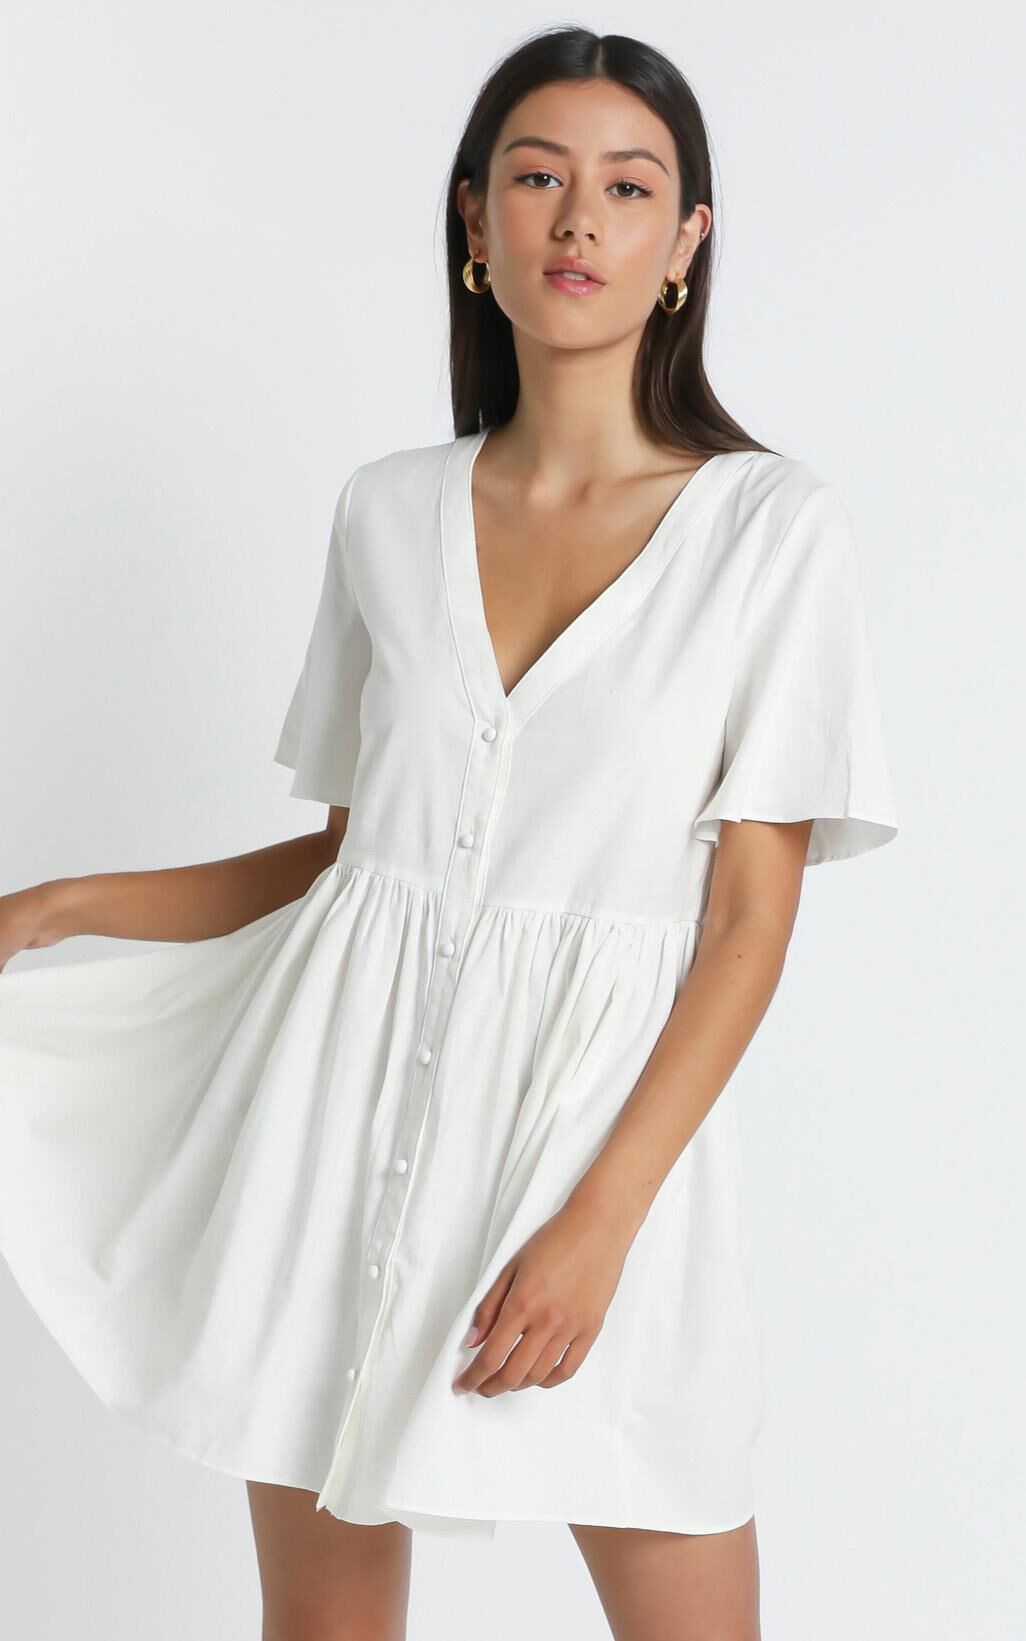 white summer dresses online